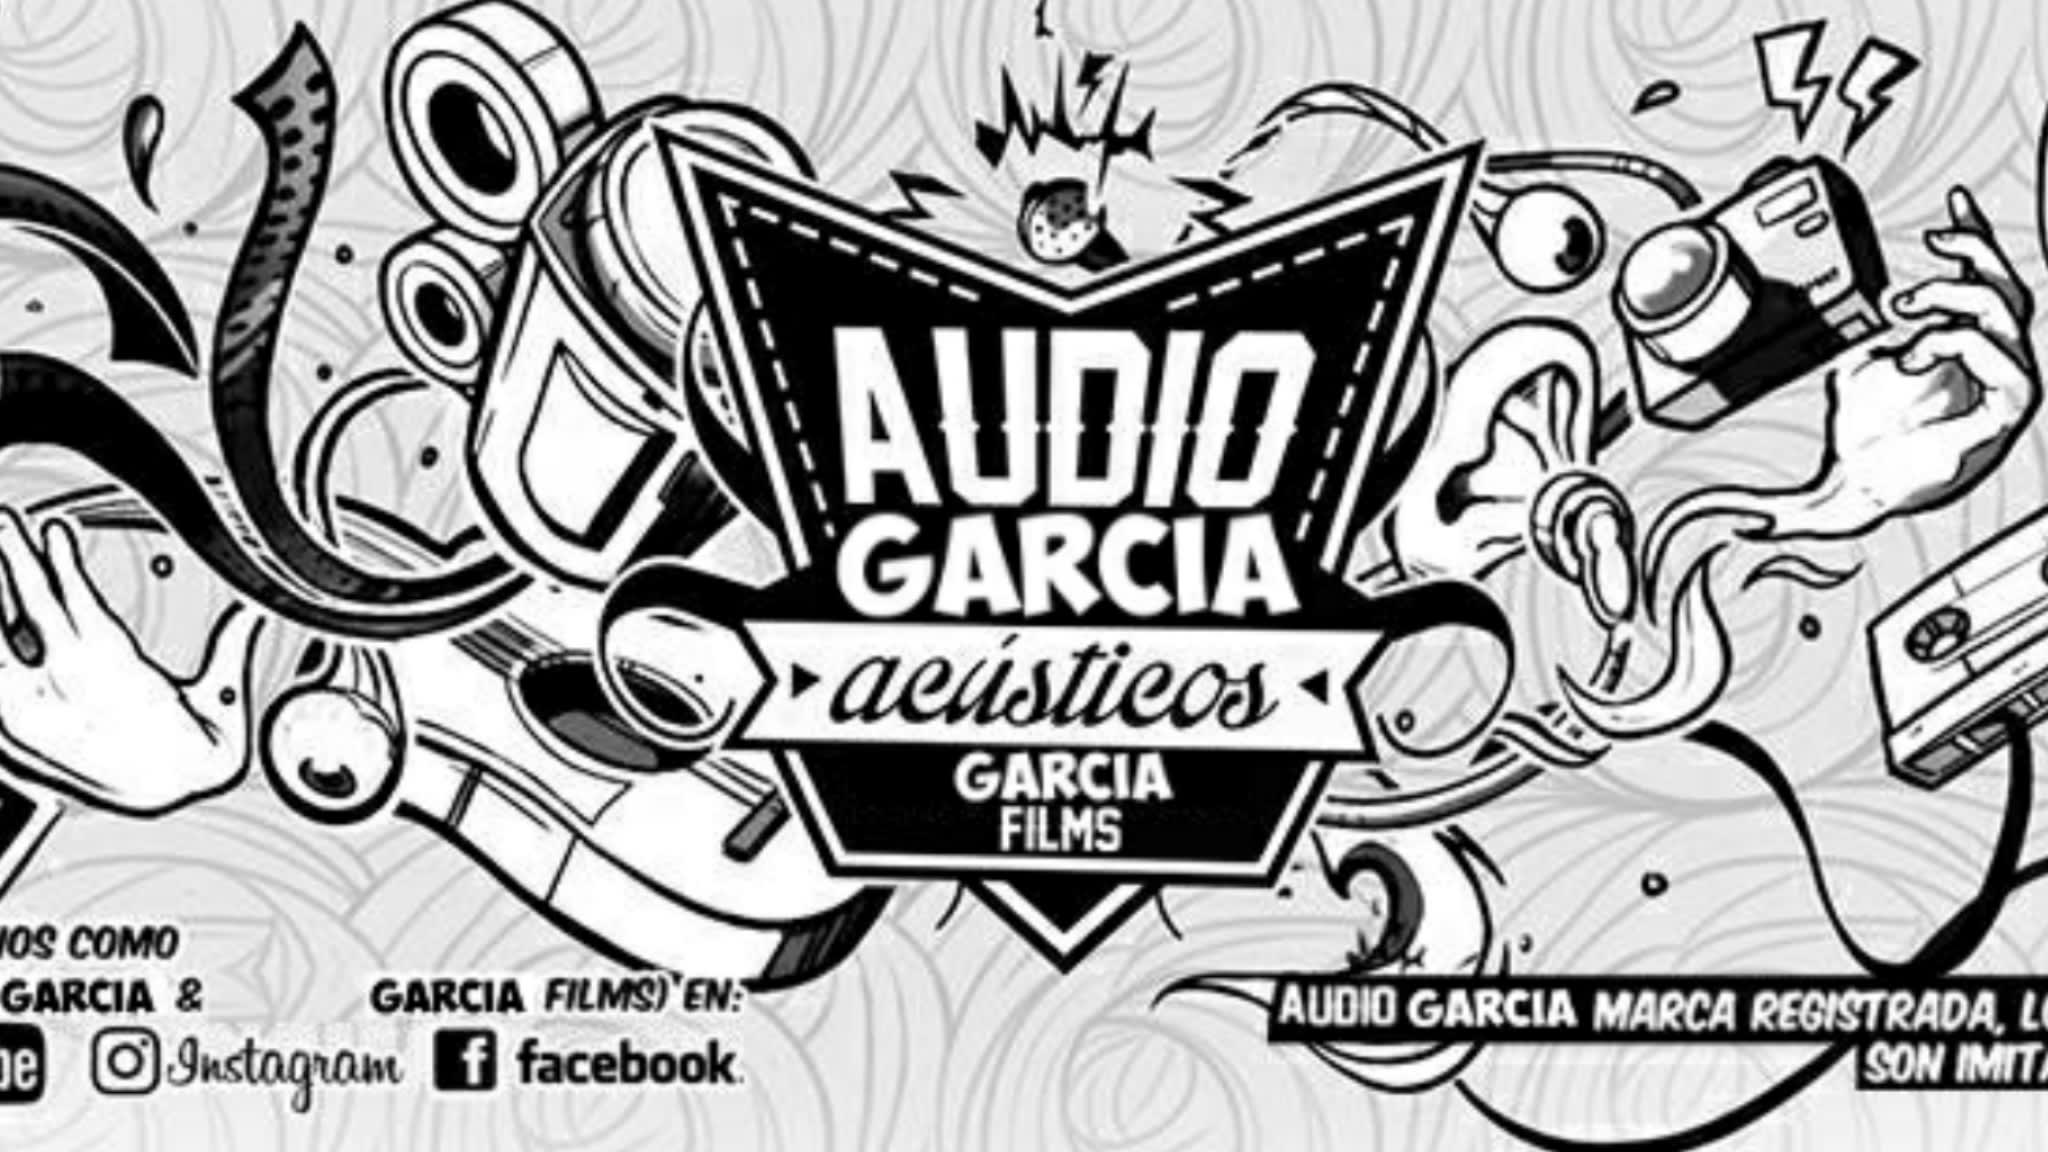 Audio García